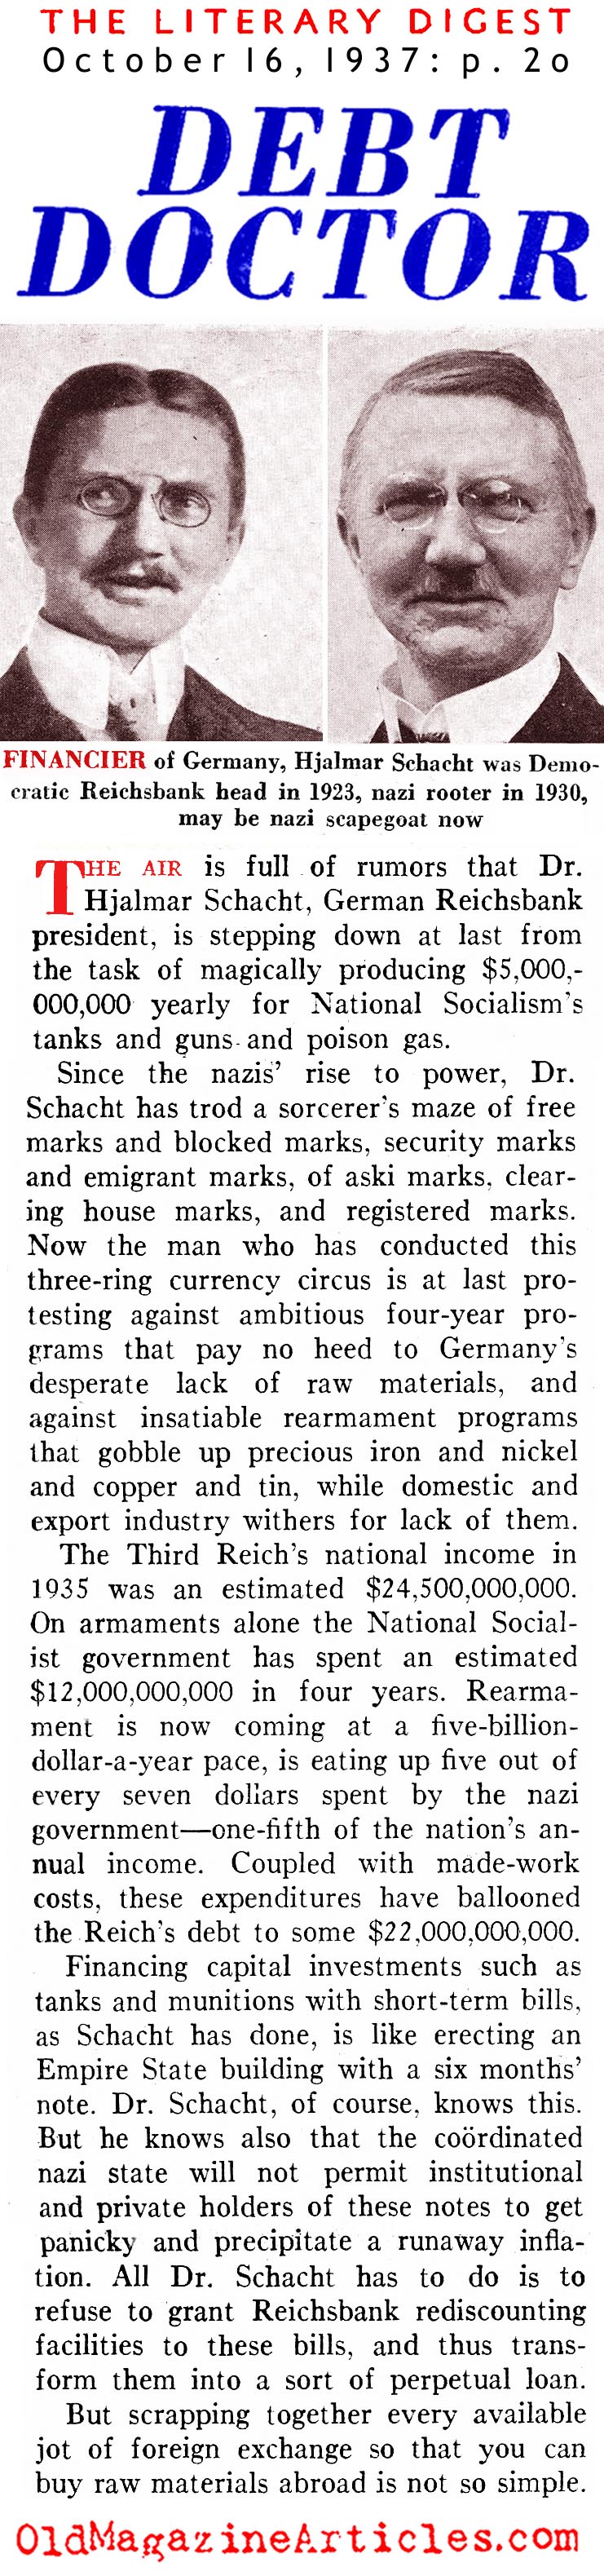 Hitler's Economist (Literary Digest, 1937)